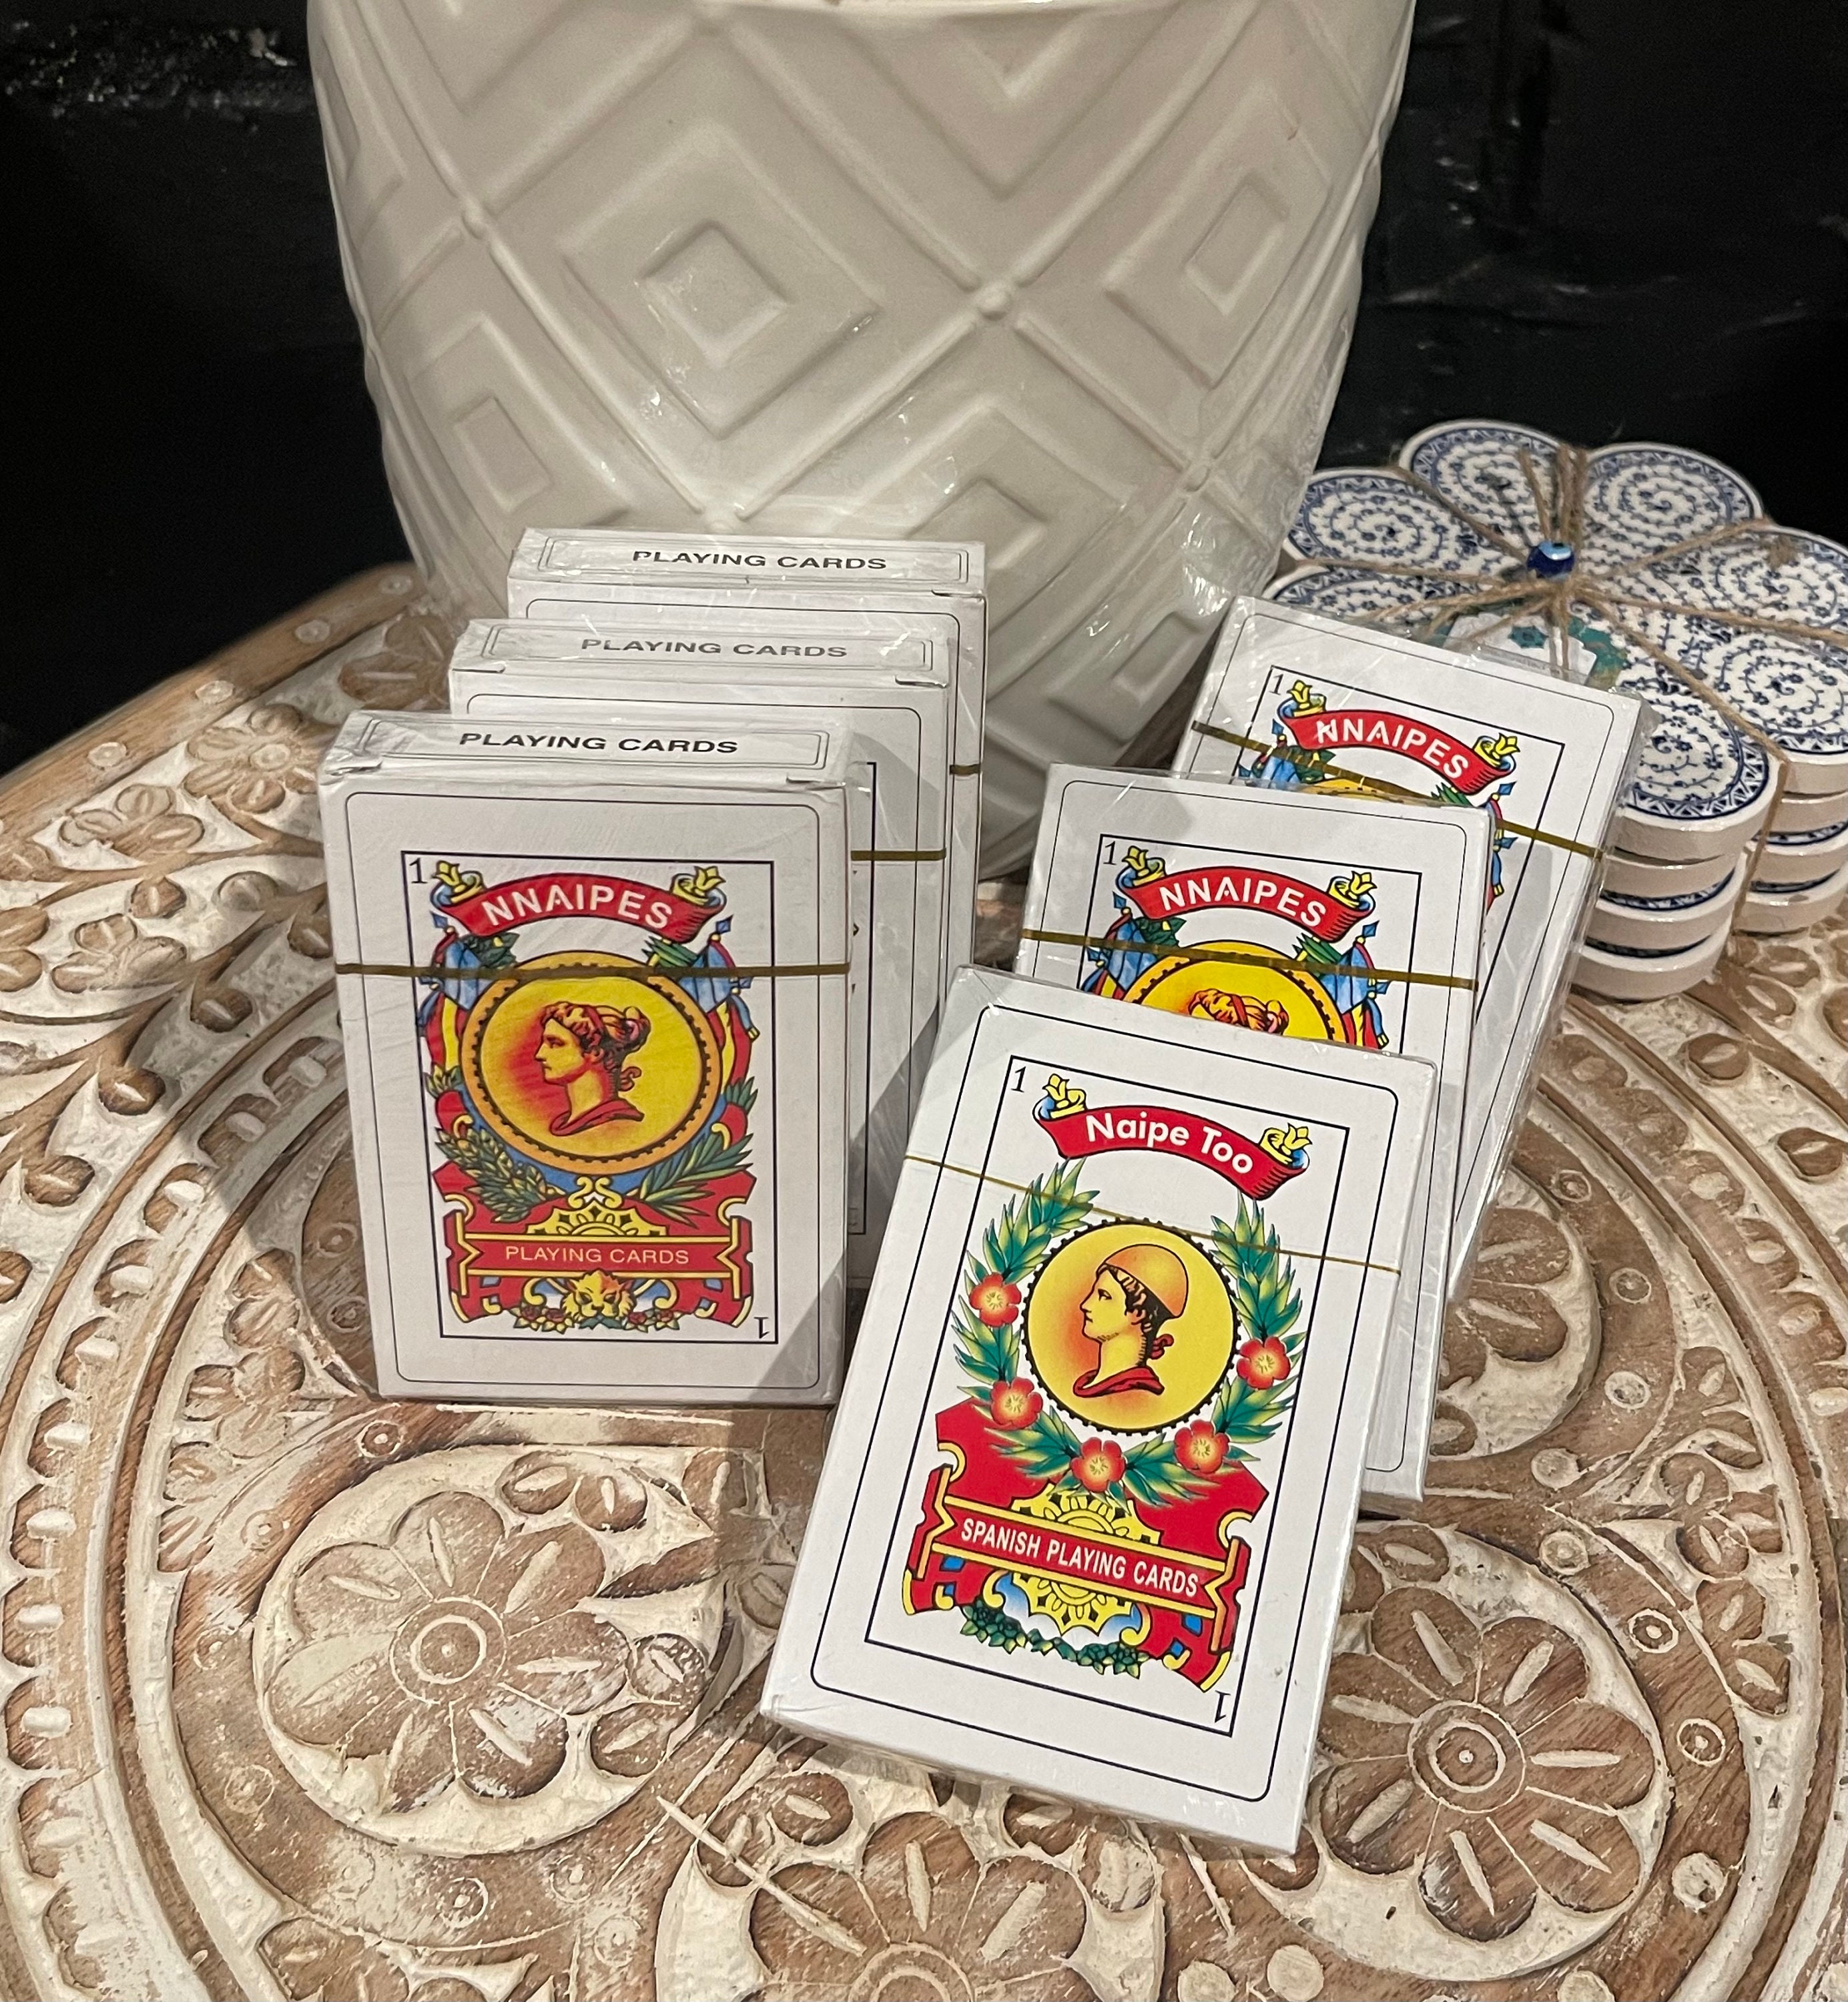 2 Decks Spanish Playing Cards Cartas Españolas, Baraja Española, Briscas  Cards Puerto Rico, Mexican Playing Cards, Plastico Spanish Cards, Barajas